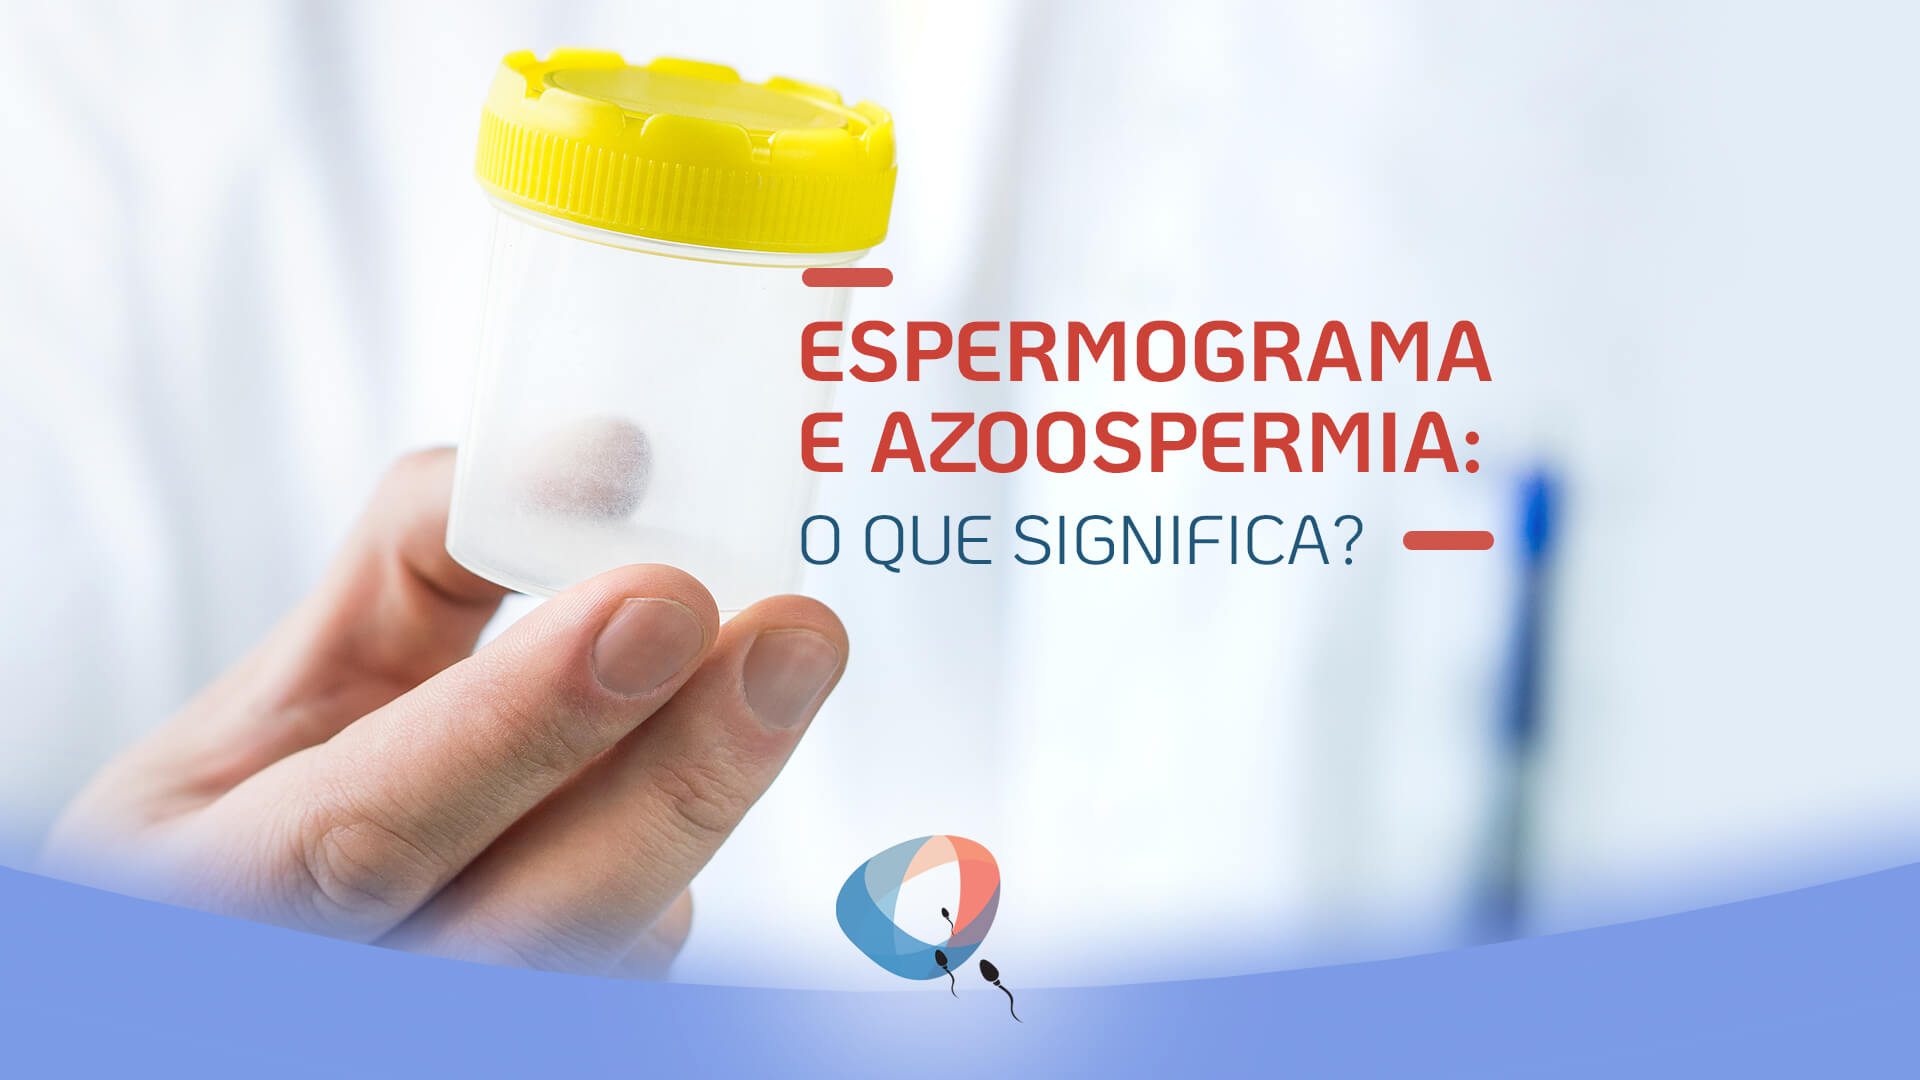 Espermograma e azoospermia: o que significa?